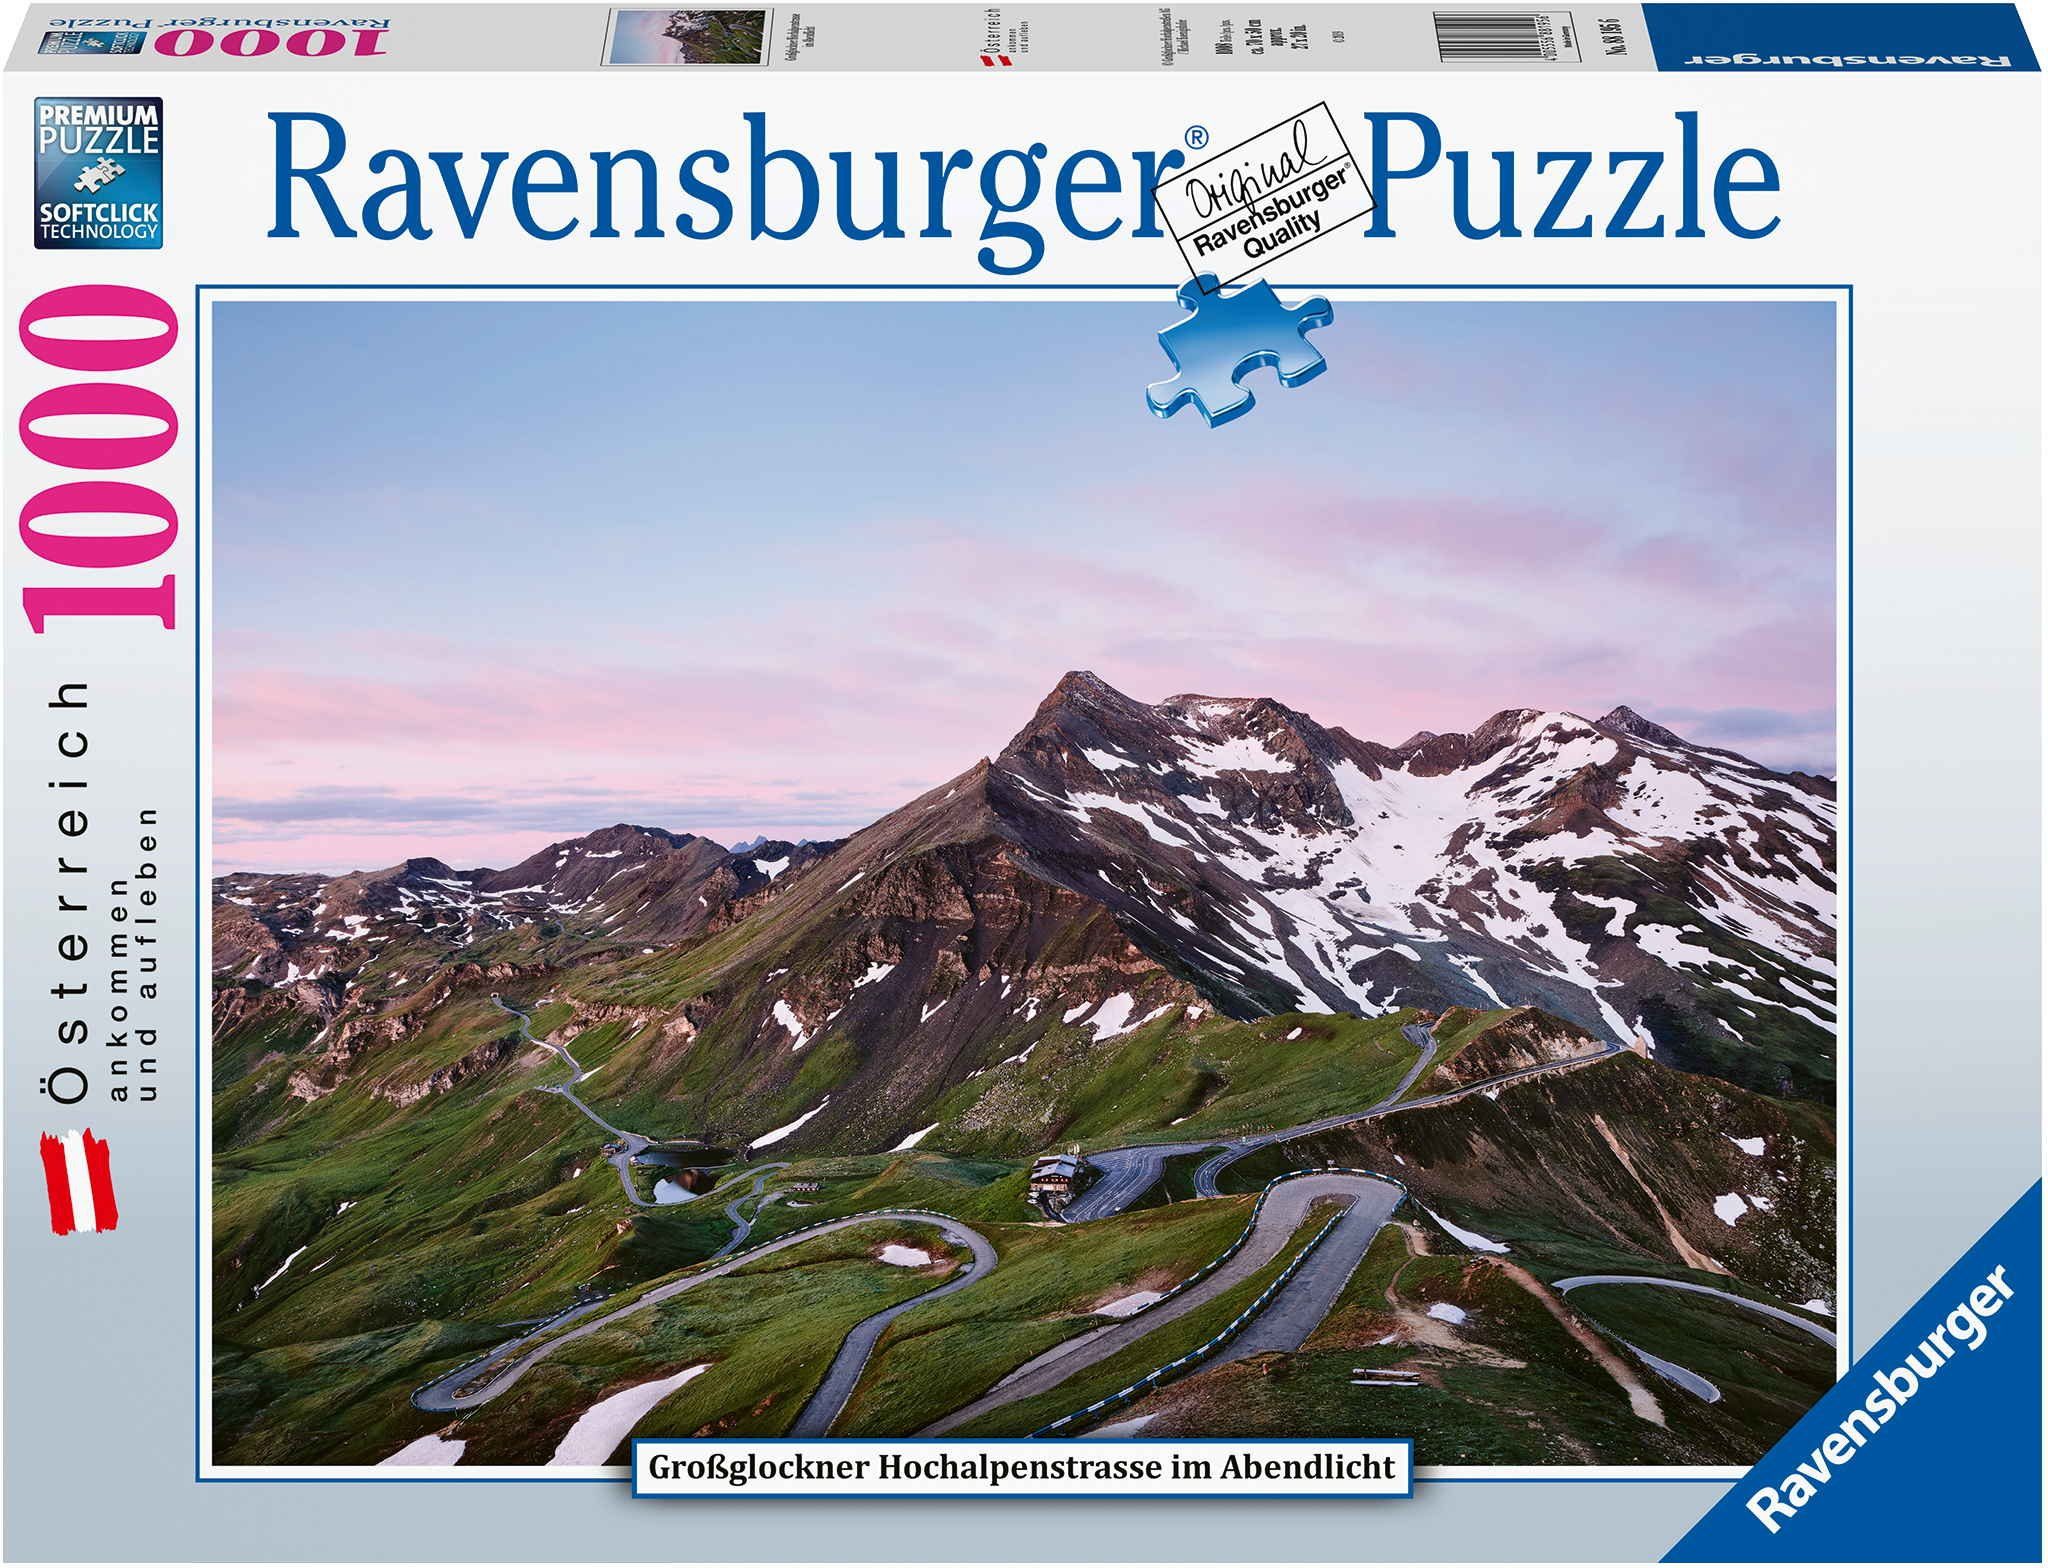 Großglockner 88195, 1000 Ravensburger Puzzleteile Teile Österreich Puzzle Puzzle Hochalpenstraße 1000